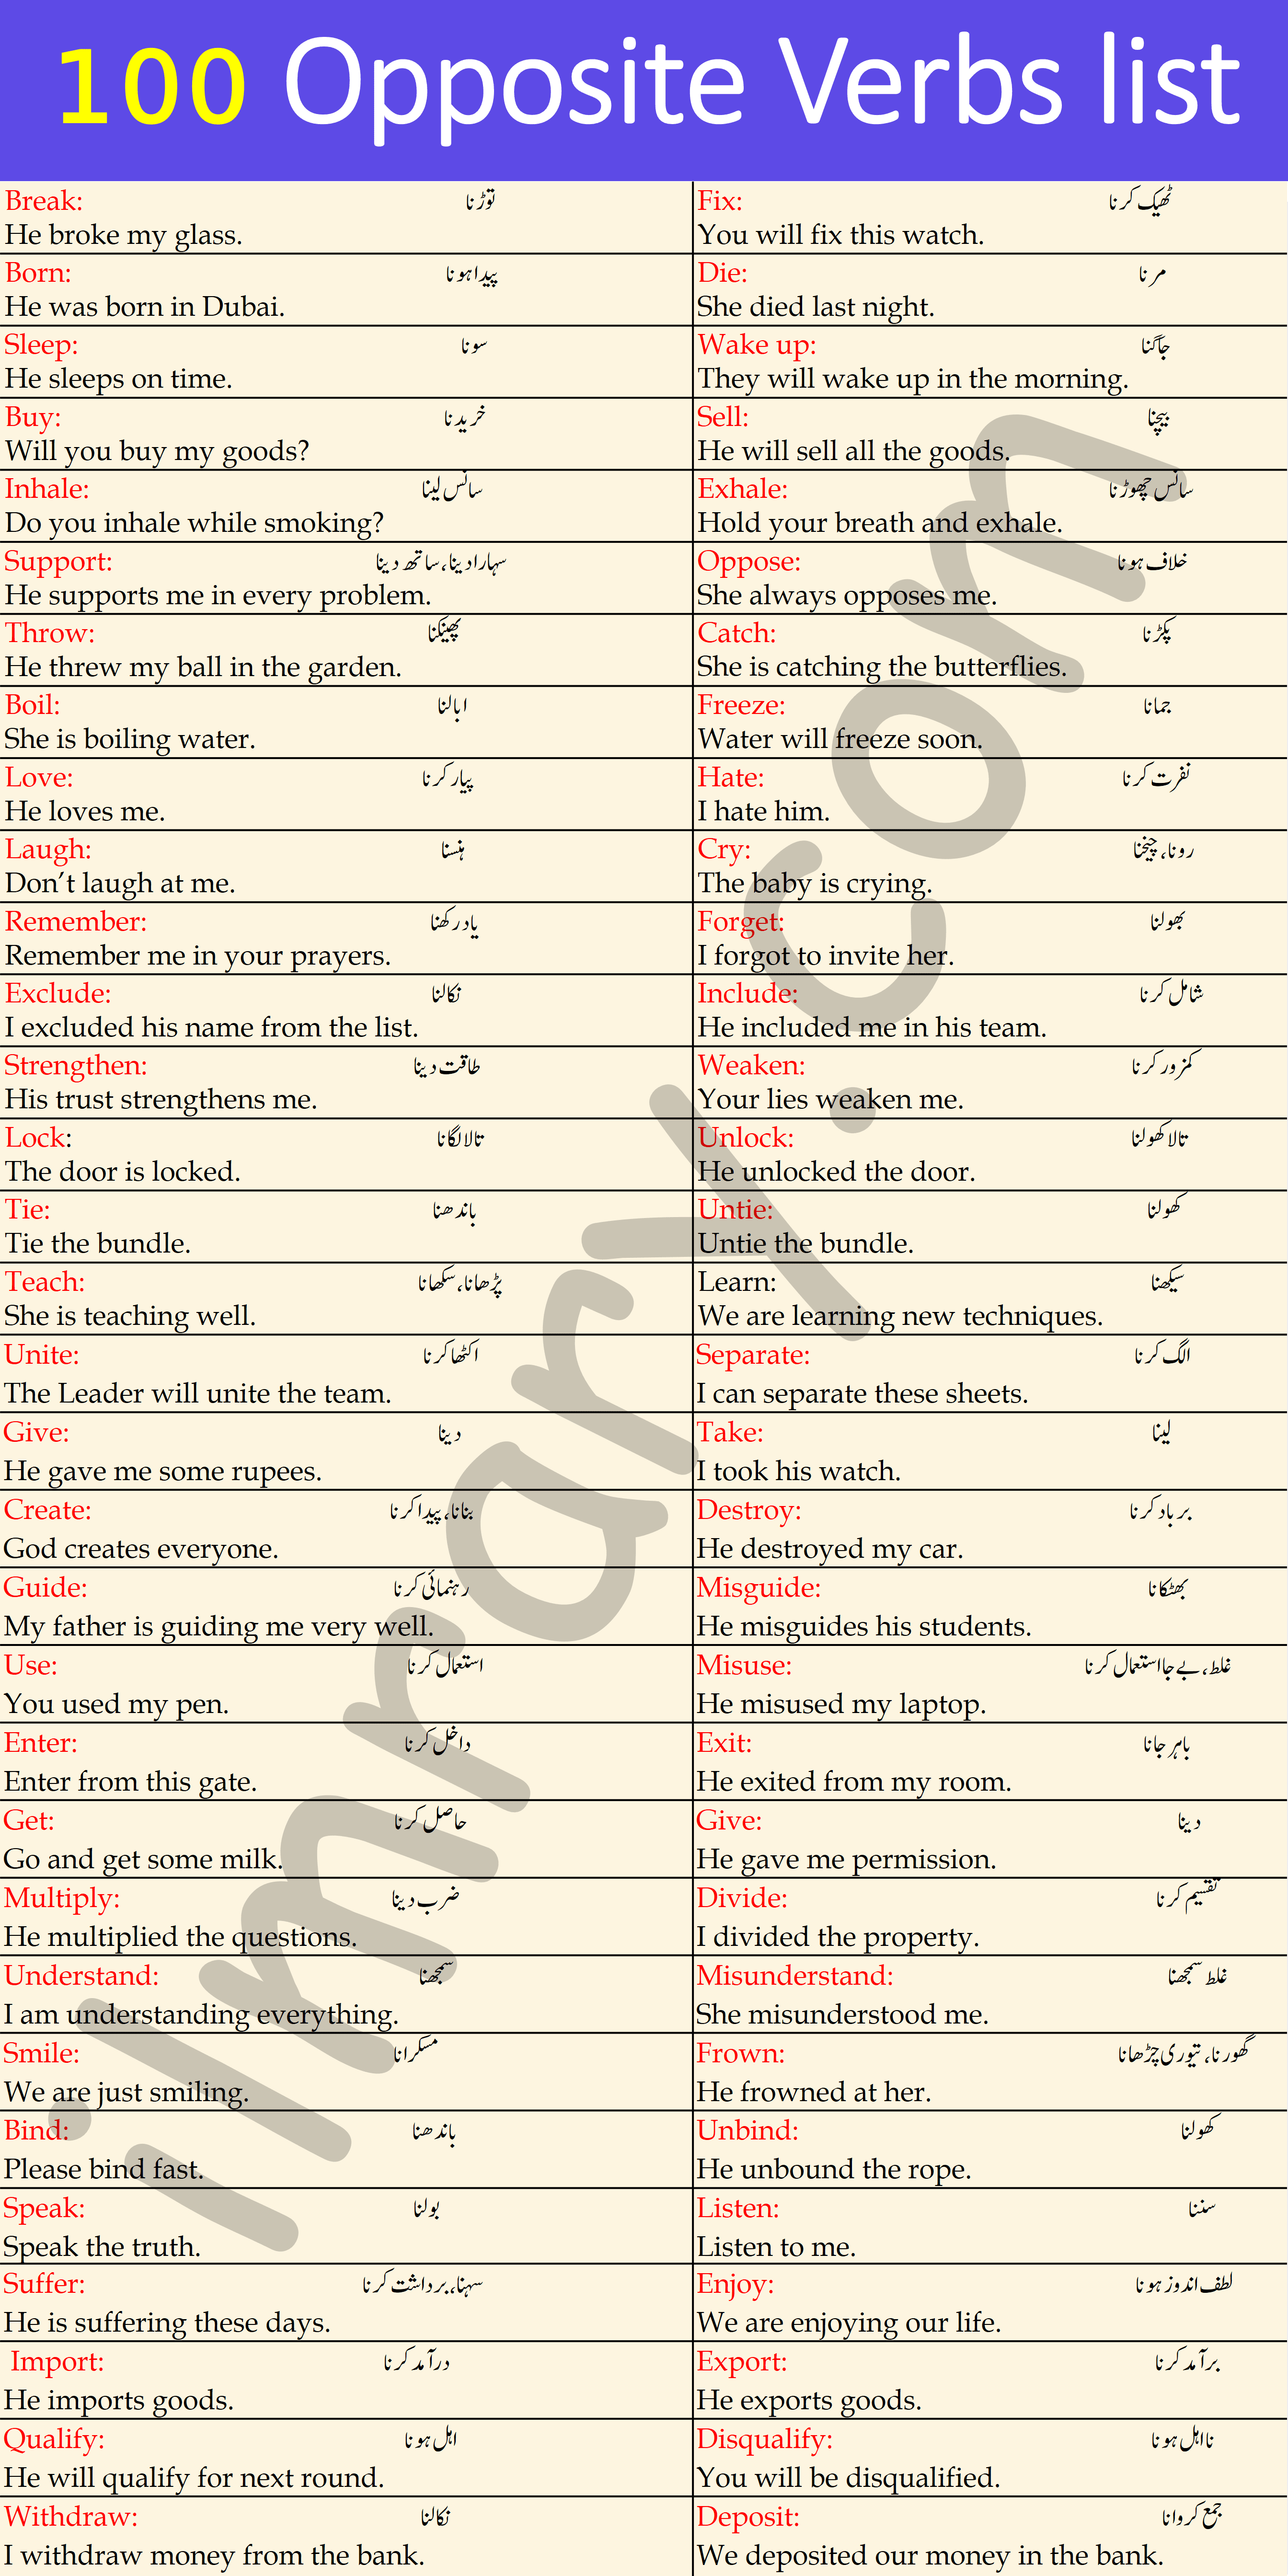 100 List of Opposite Verbs with Urdu Meanings